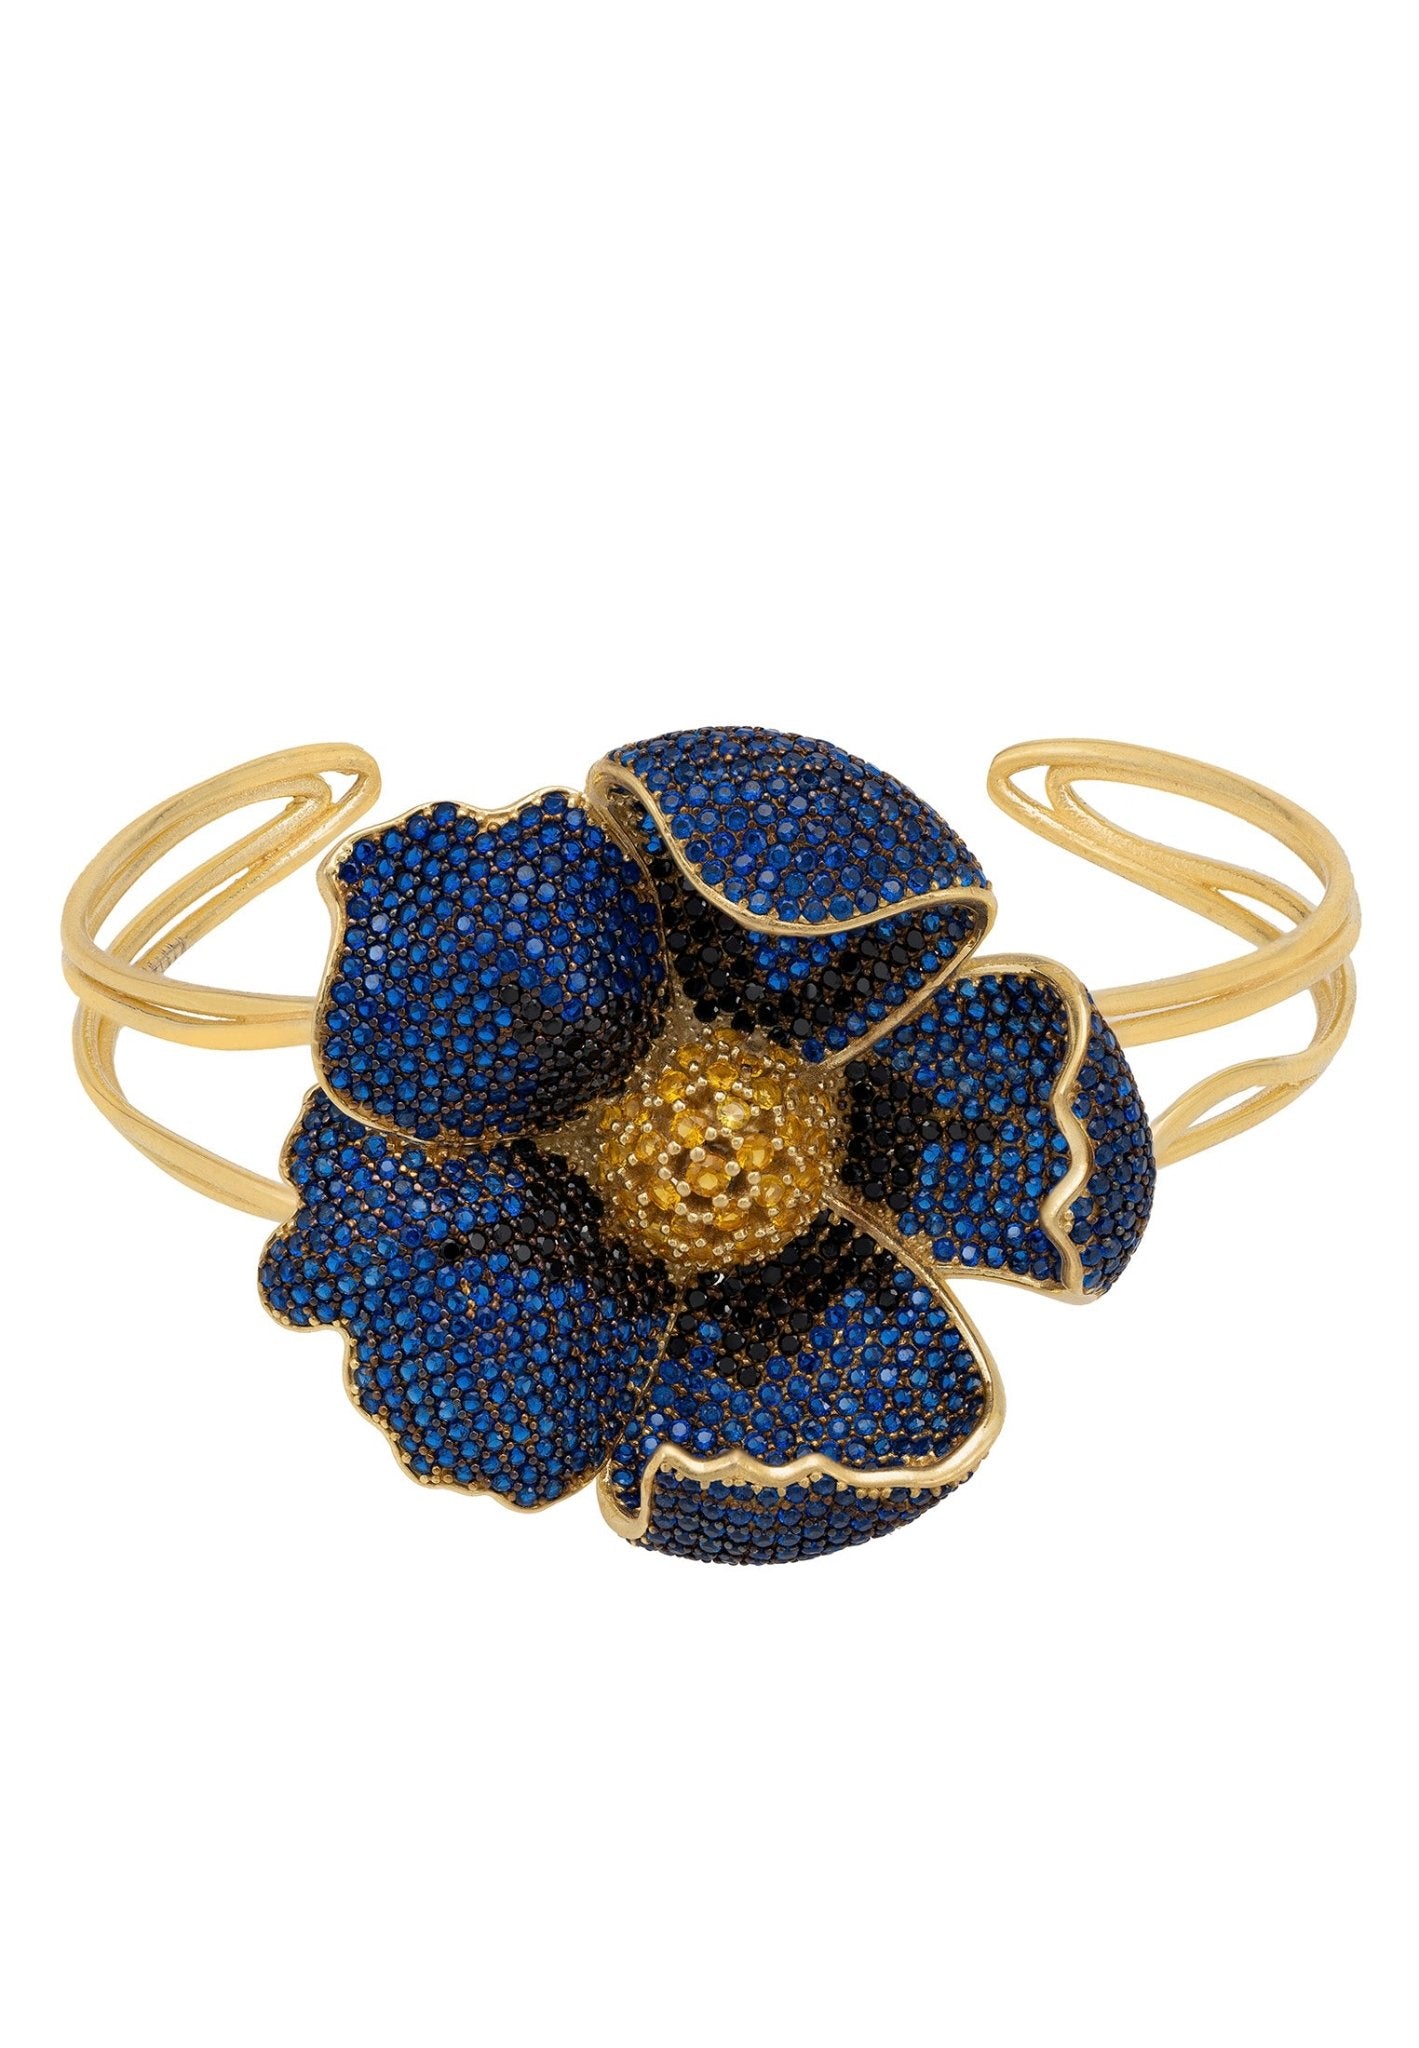 Poppy Bangle Cuff Bracelet Gold Sapphire Blue Cz - LATELITA Bracelets